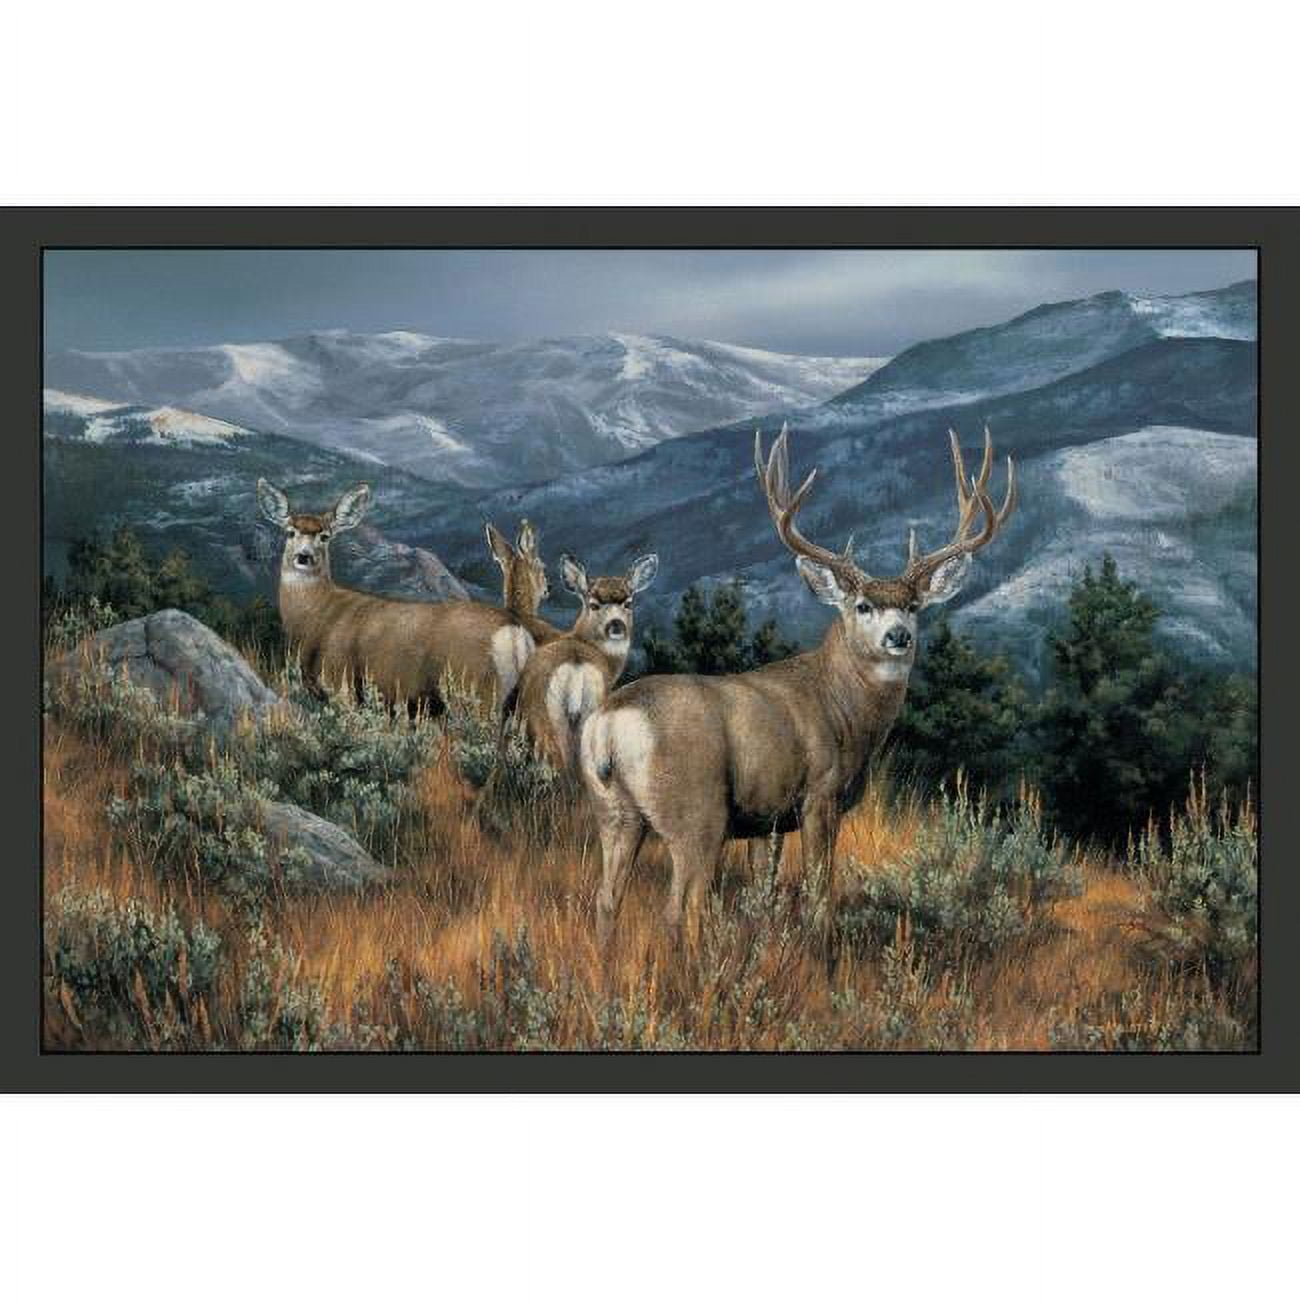 Cpr066 Lastglance Mule Deer Size 18 X 26 In. Doormat Rug - Blue, Brown, Brown & Tan